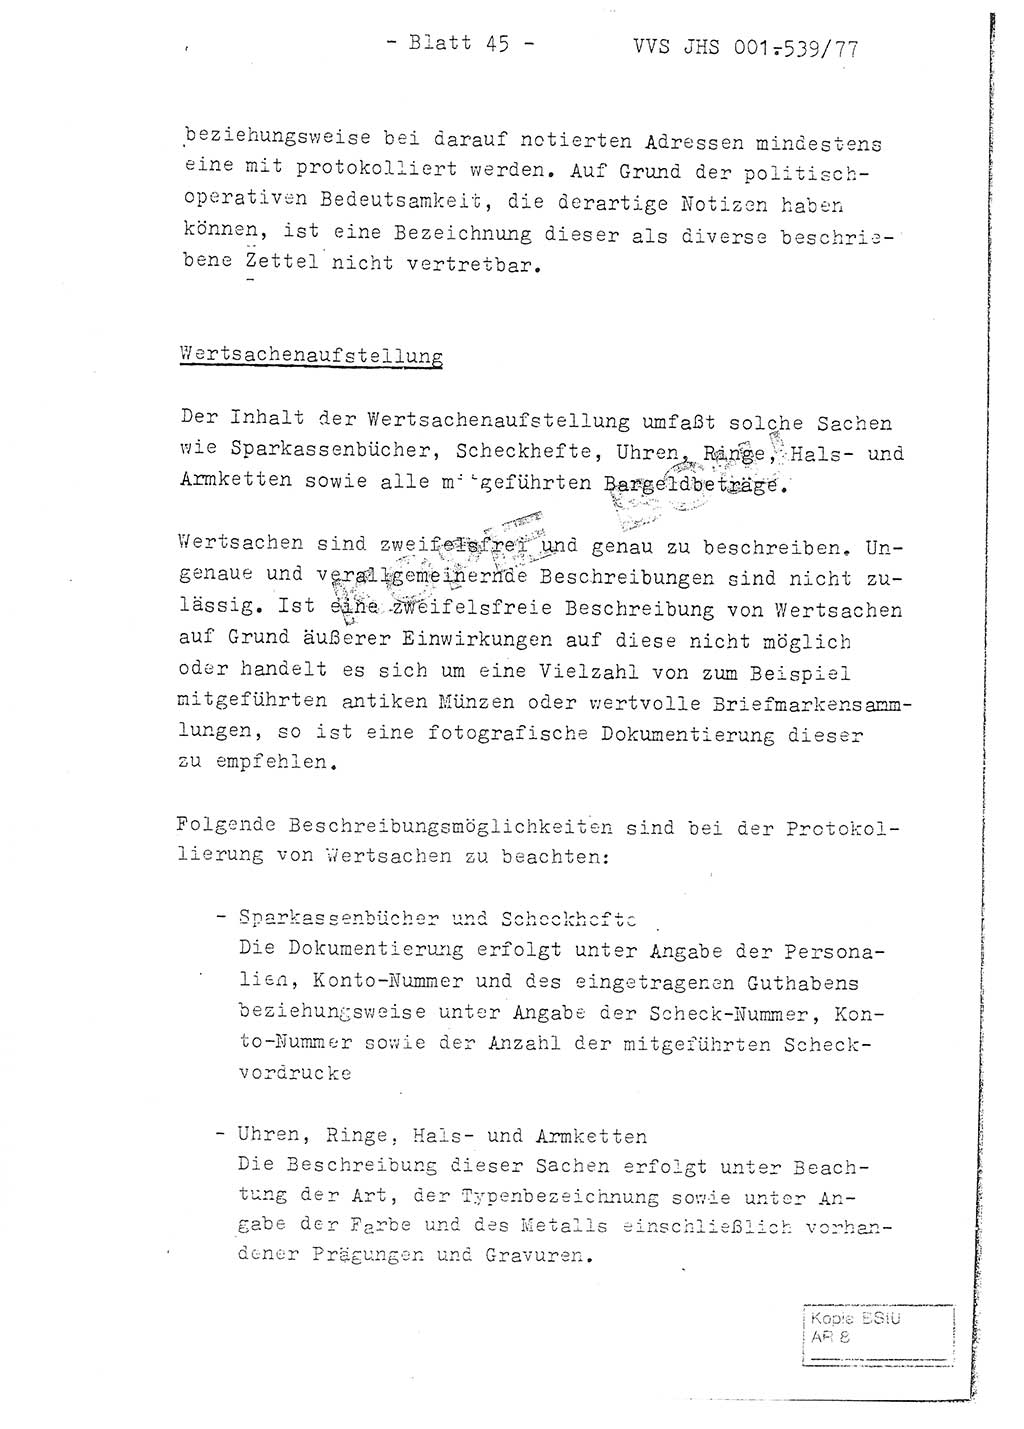 Fachschulabschlußarbeit Hauptmann Dietrich Jung (Abt. ⅩⅣ), Leutnant Klaus Klötzner (Abt. ⅩⅣ), Ministerium für Staatssicherheit (MfS) [Deutsche Demokratische Republik (DDR)], Juristische Hochschule (JHS), Vertrauliche Verschlußsache (VVS) 001-539/77, Potsdam 1978, Seite 45 (FS-Abschl.-Arb. MfS DDR JHS VVS 001-539/77 1978, S. 45)